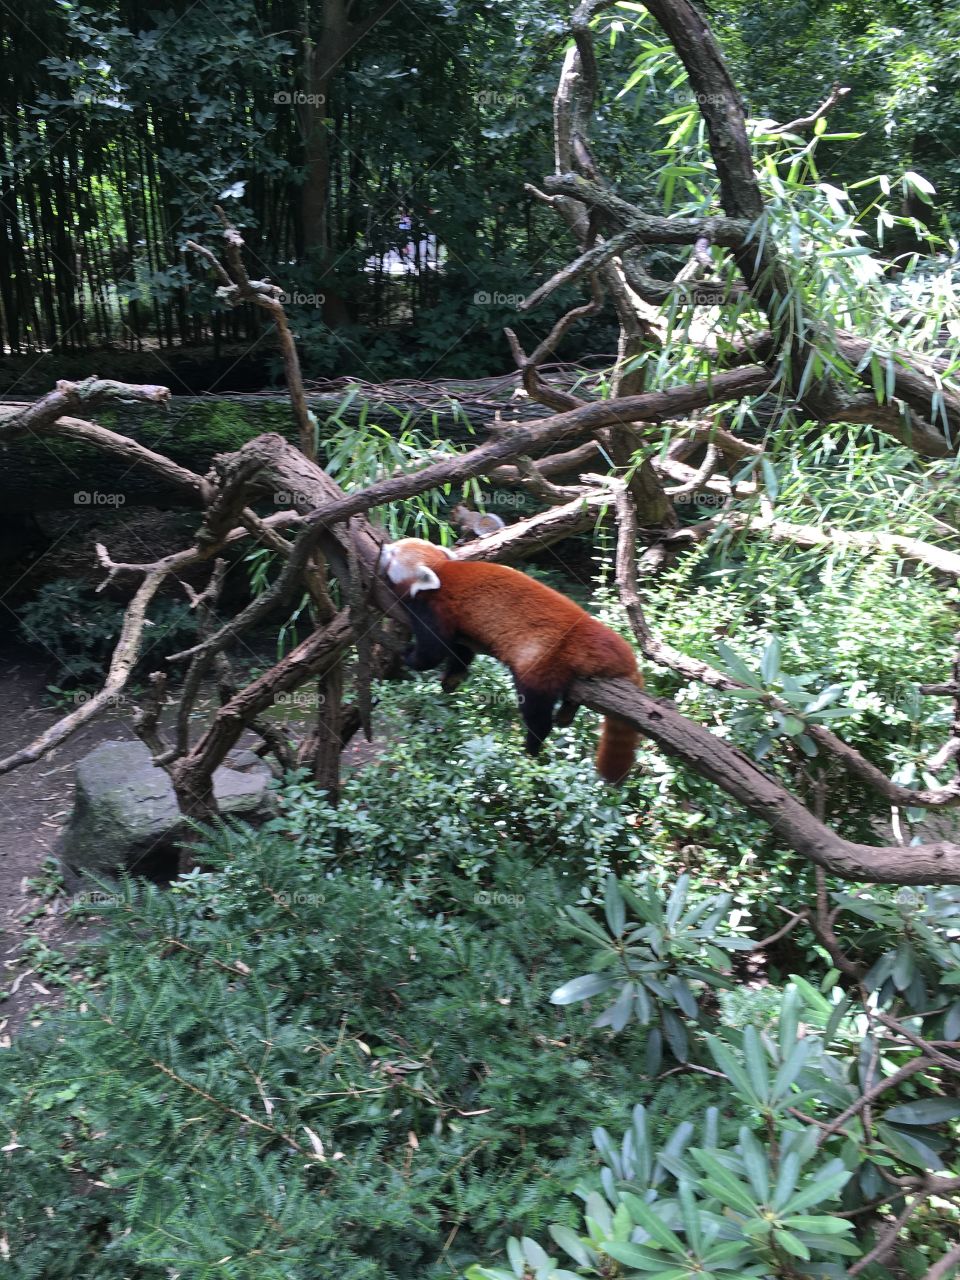 Red panda
